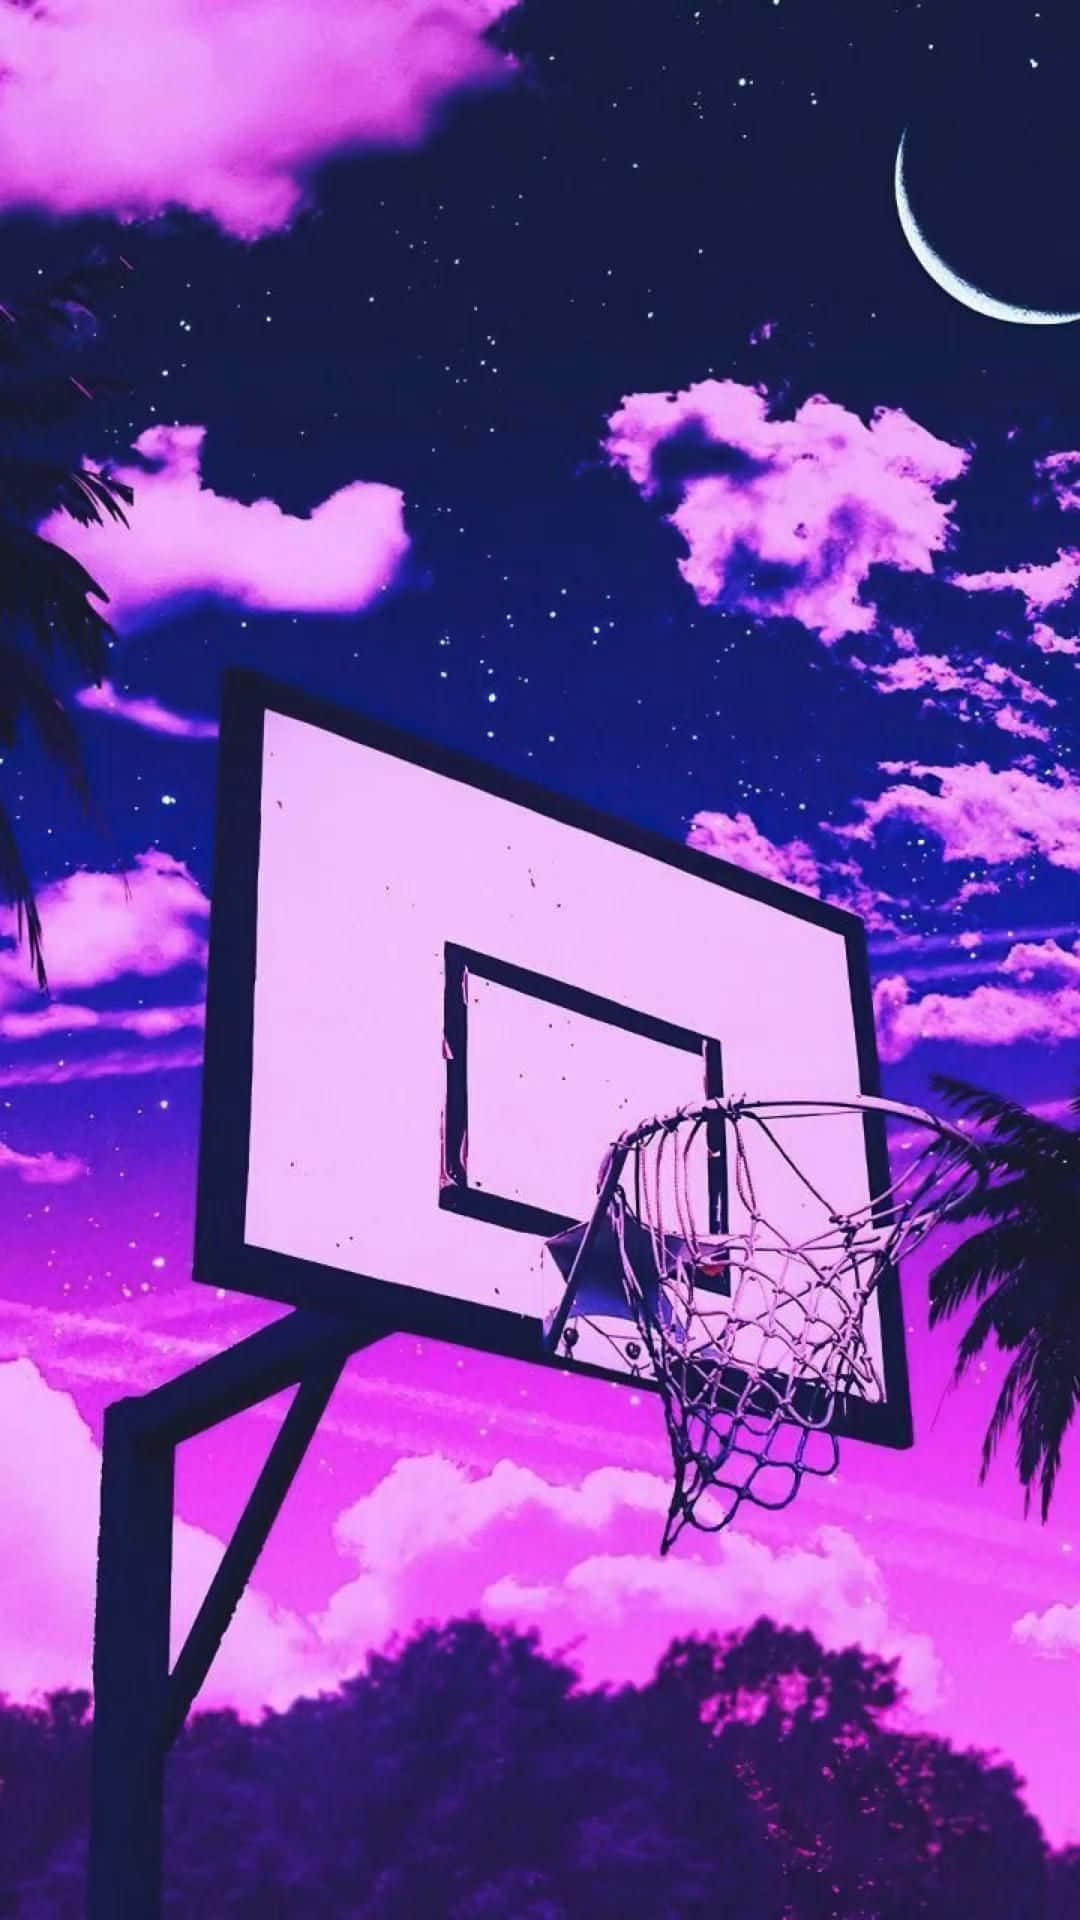 Cute Pink Basketball Hoop Night Sky Wallpaper